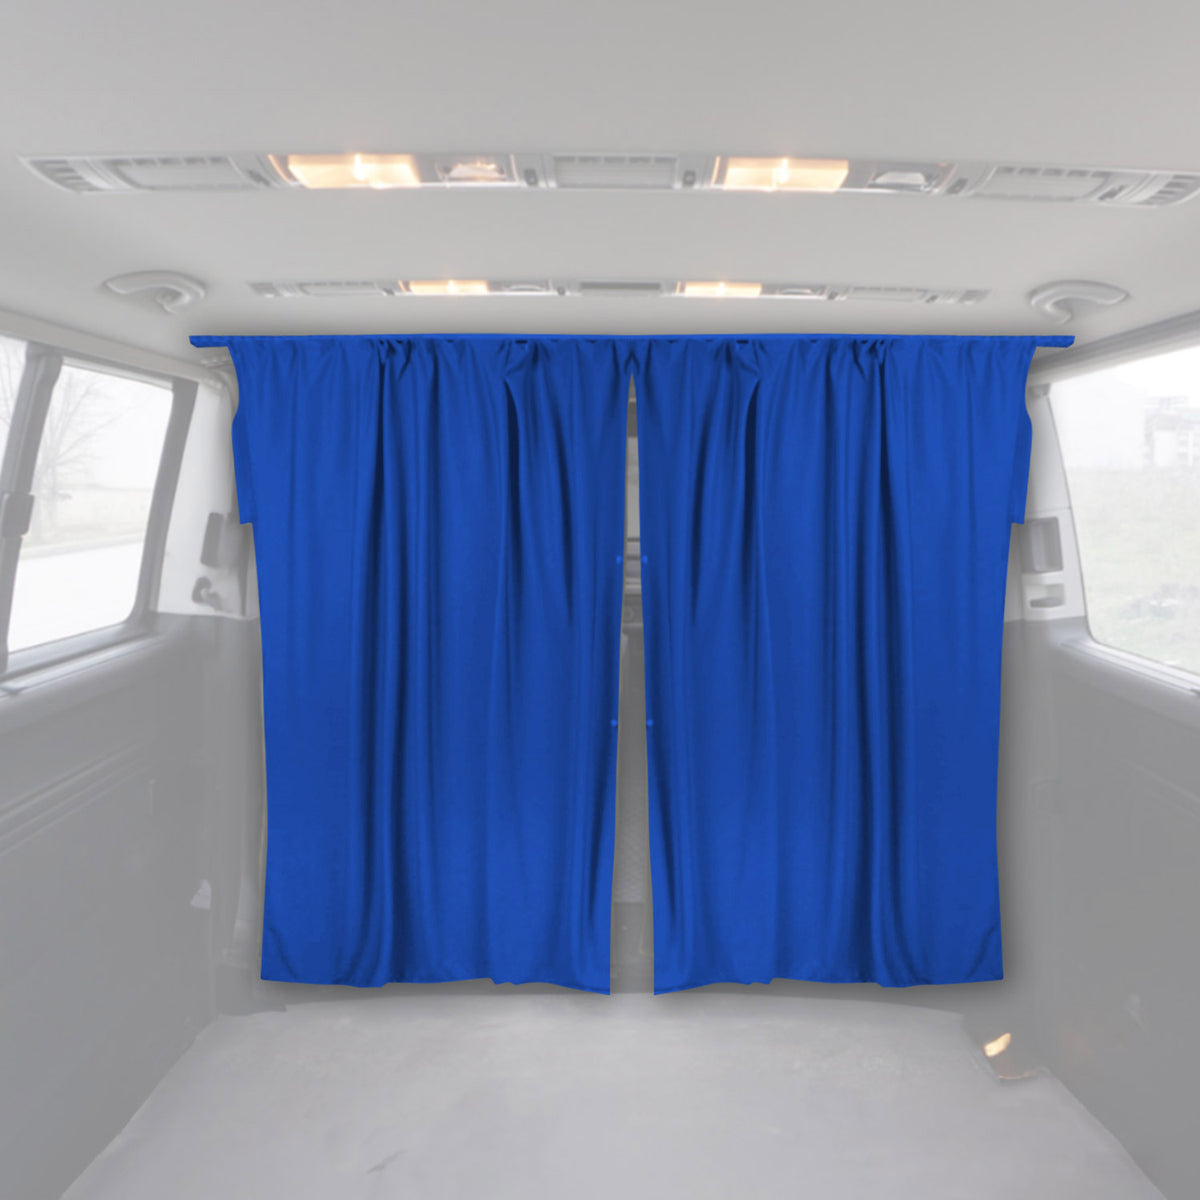 Fahrerhaus Führerhaus Gardinen Sonnenschutz für Citroen Spacetourer Blau 2tlg